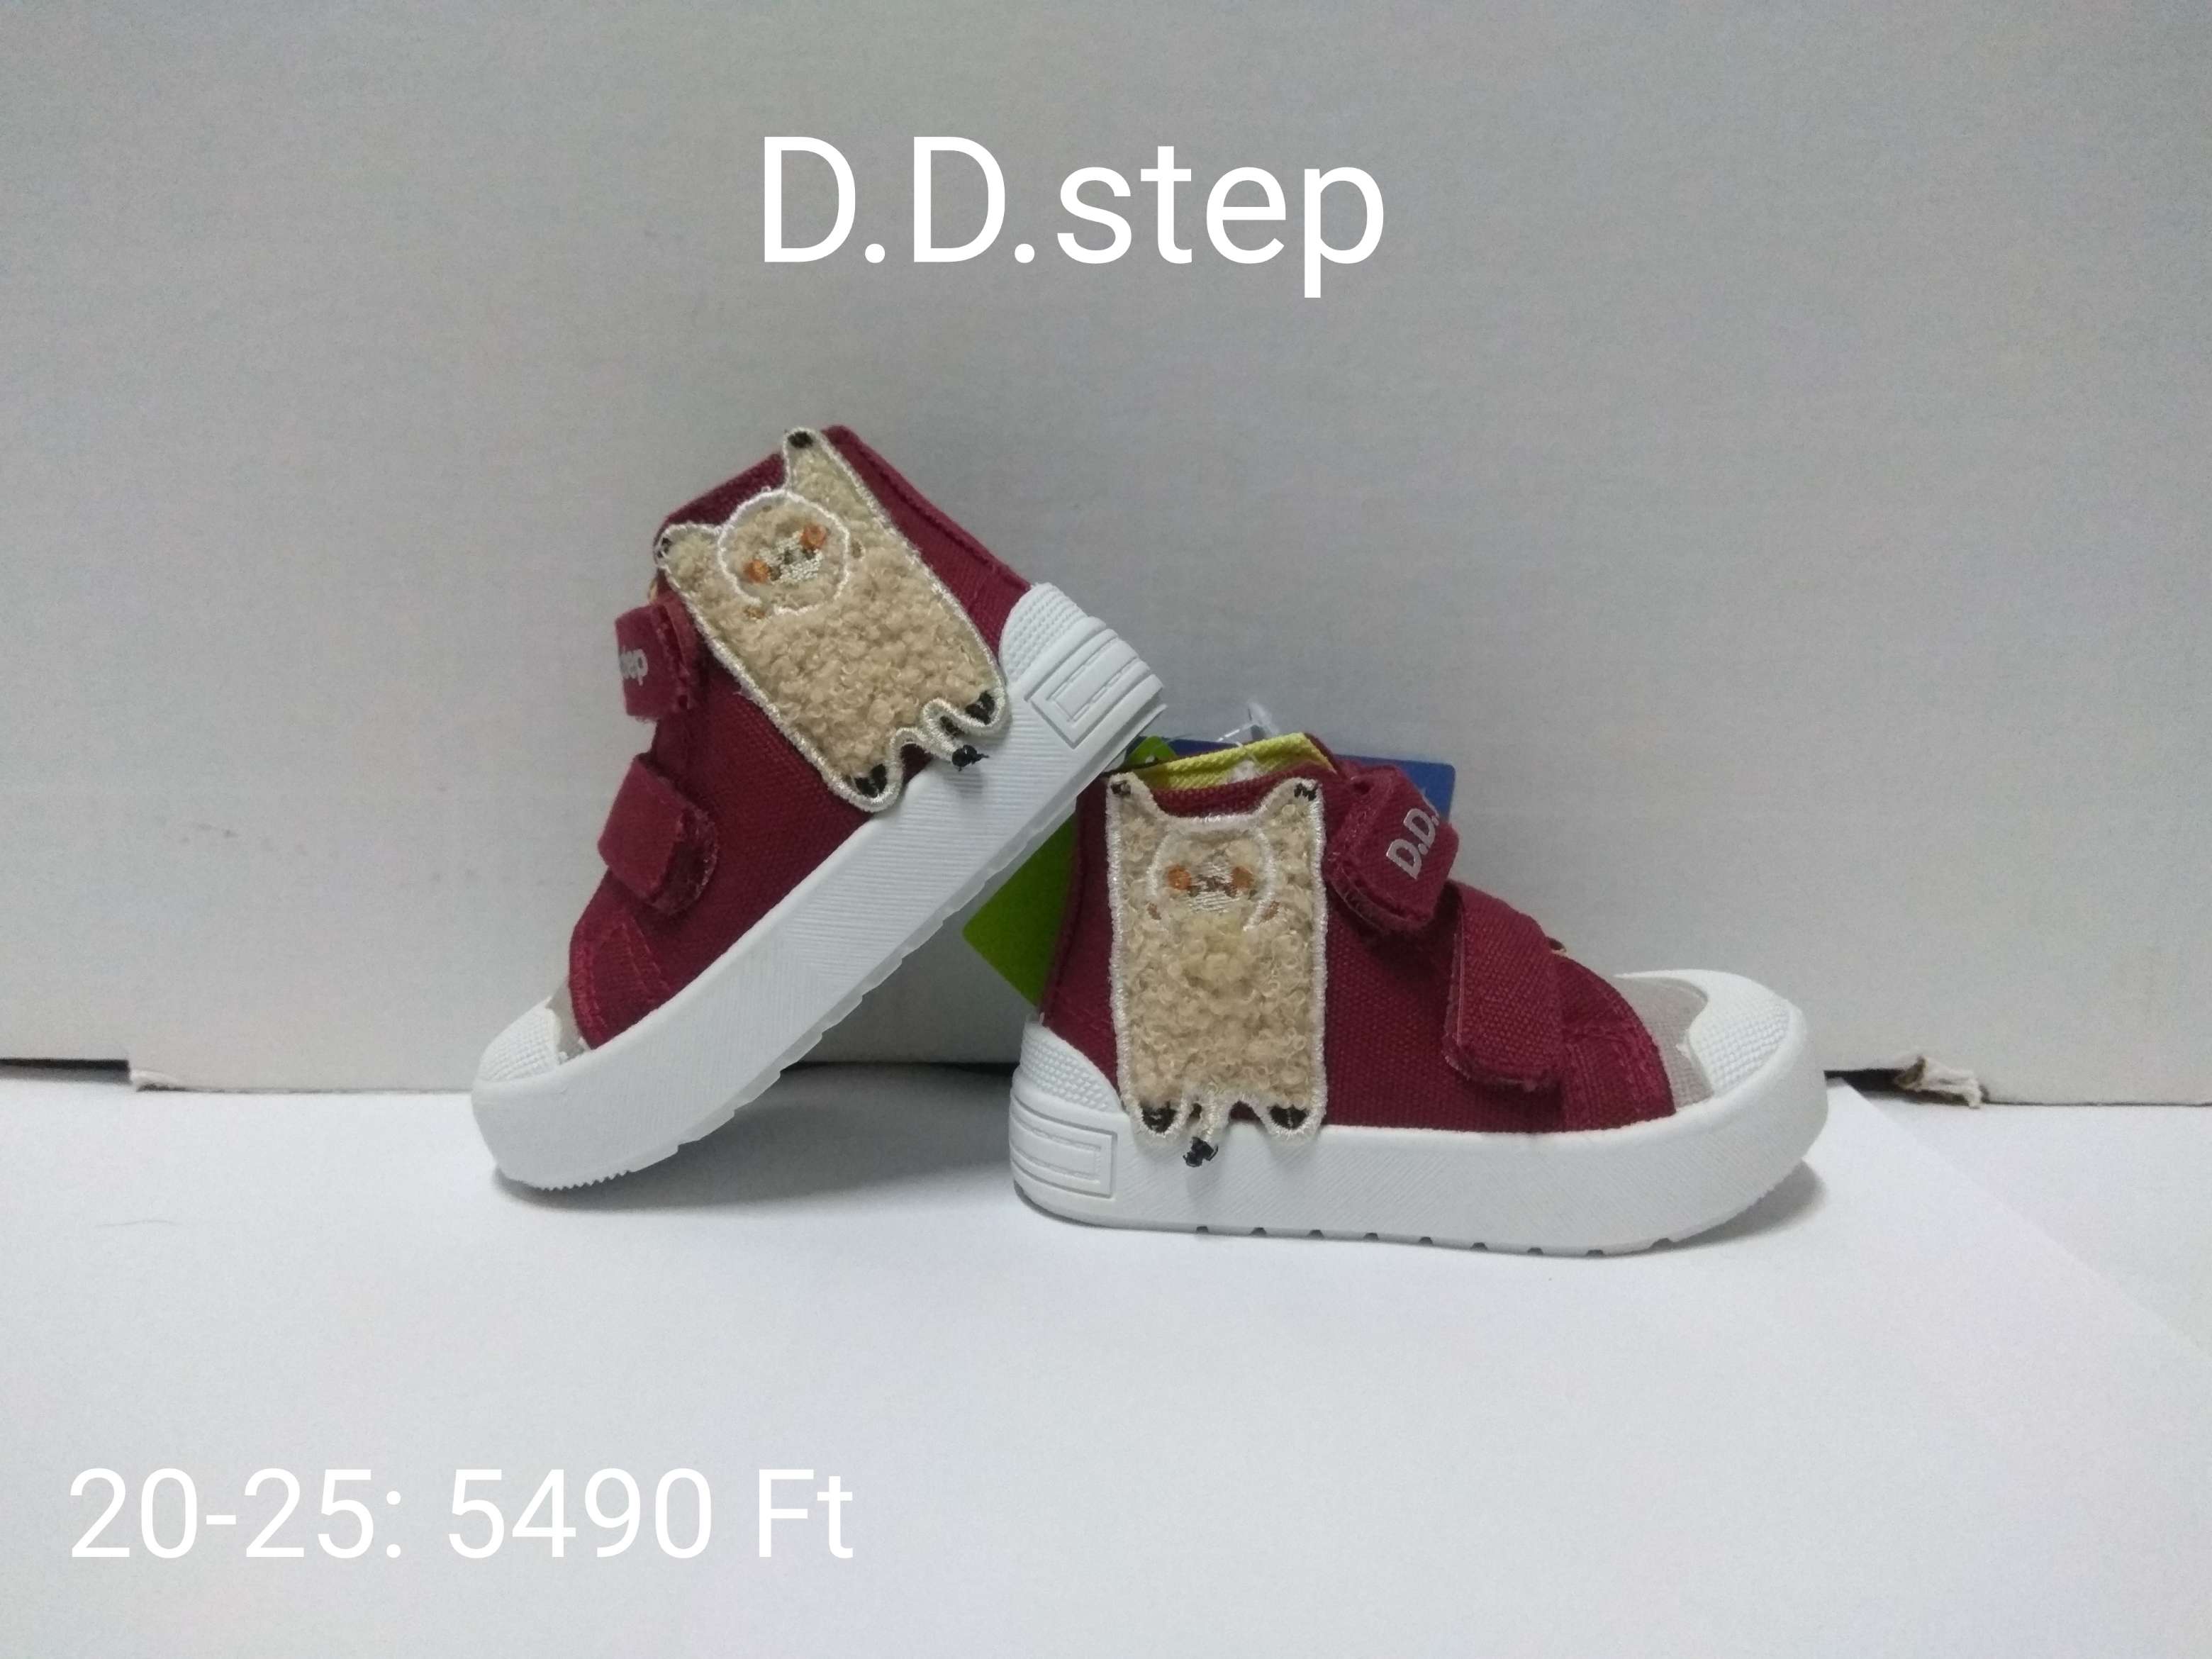 D D.step